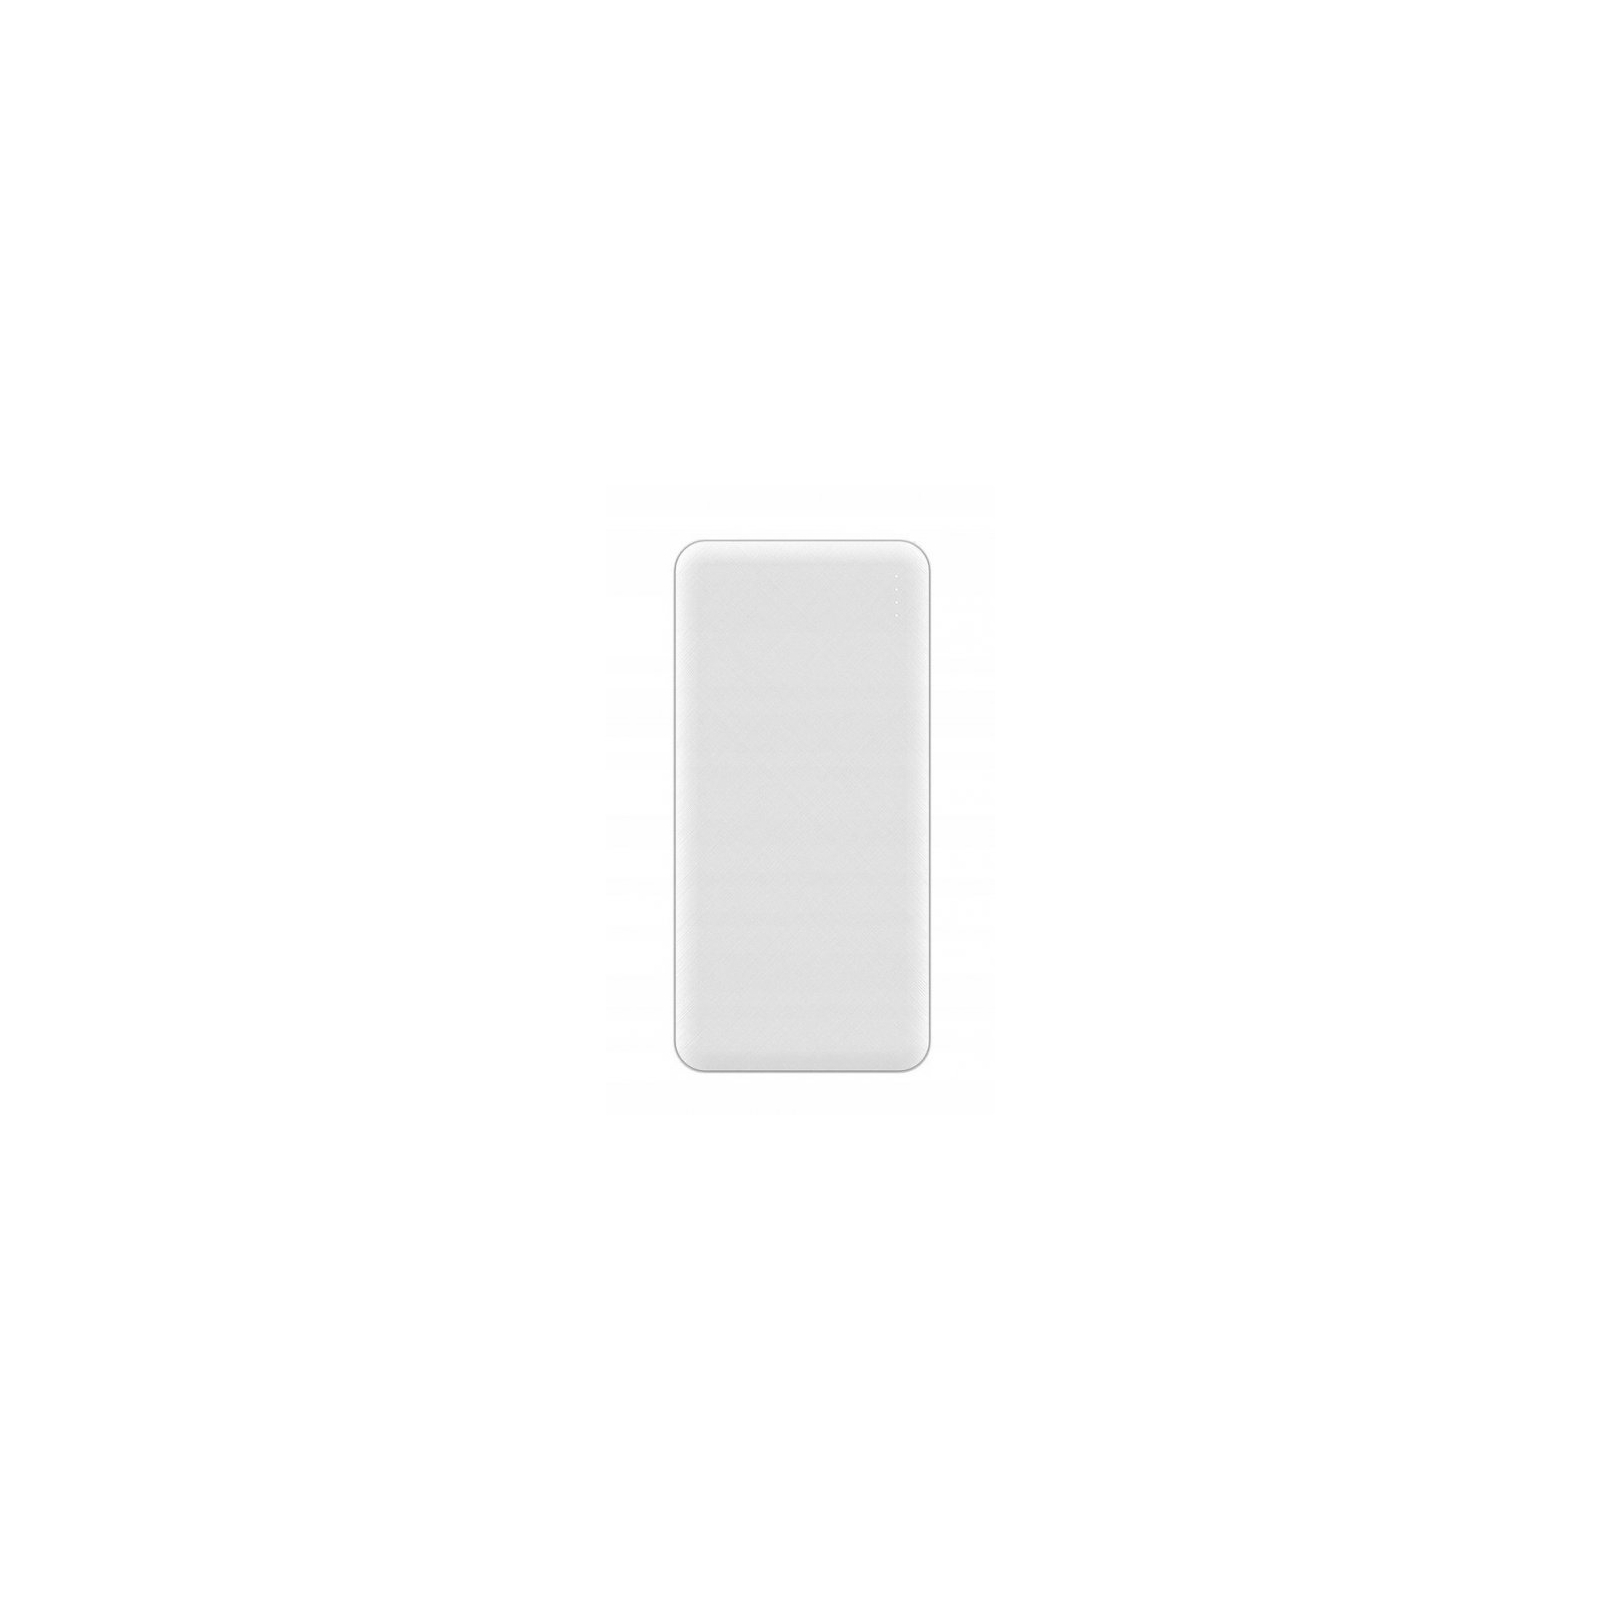 Батарея универсальная Blow 20000mAh, inp:Micro-USB(5V/2A), out:USB-A*2(5V/2,4A max), white (PB20C) изображение 4